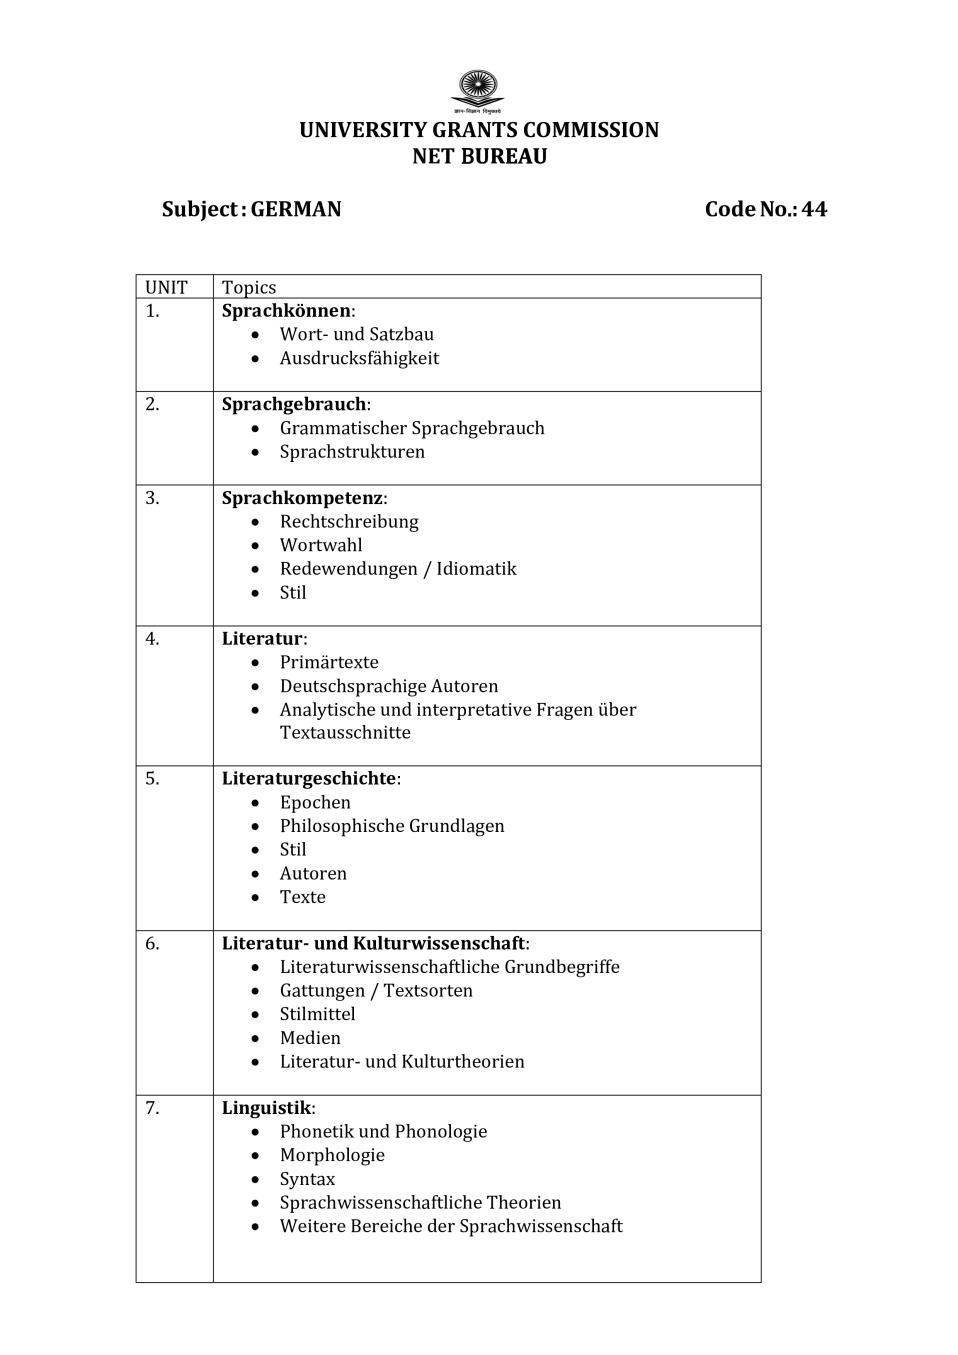 UGC NET Syllabus for Germen 2020 - Page 1